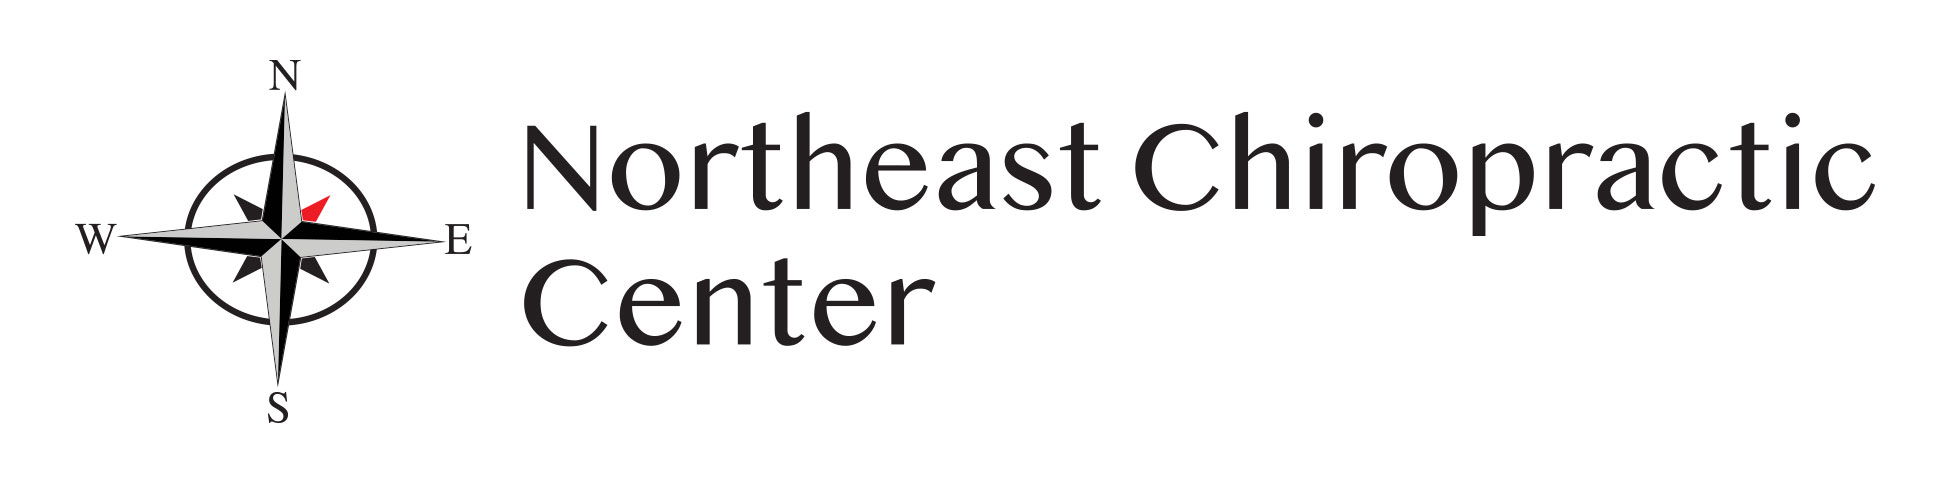 Northeast Chiropractic Center